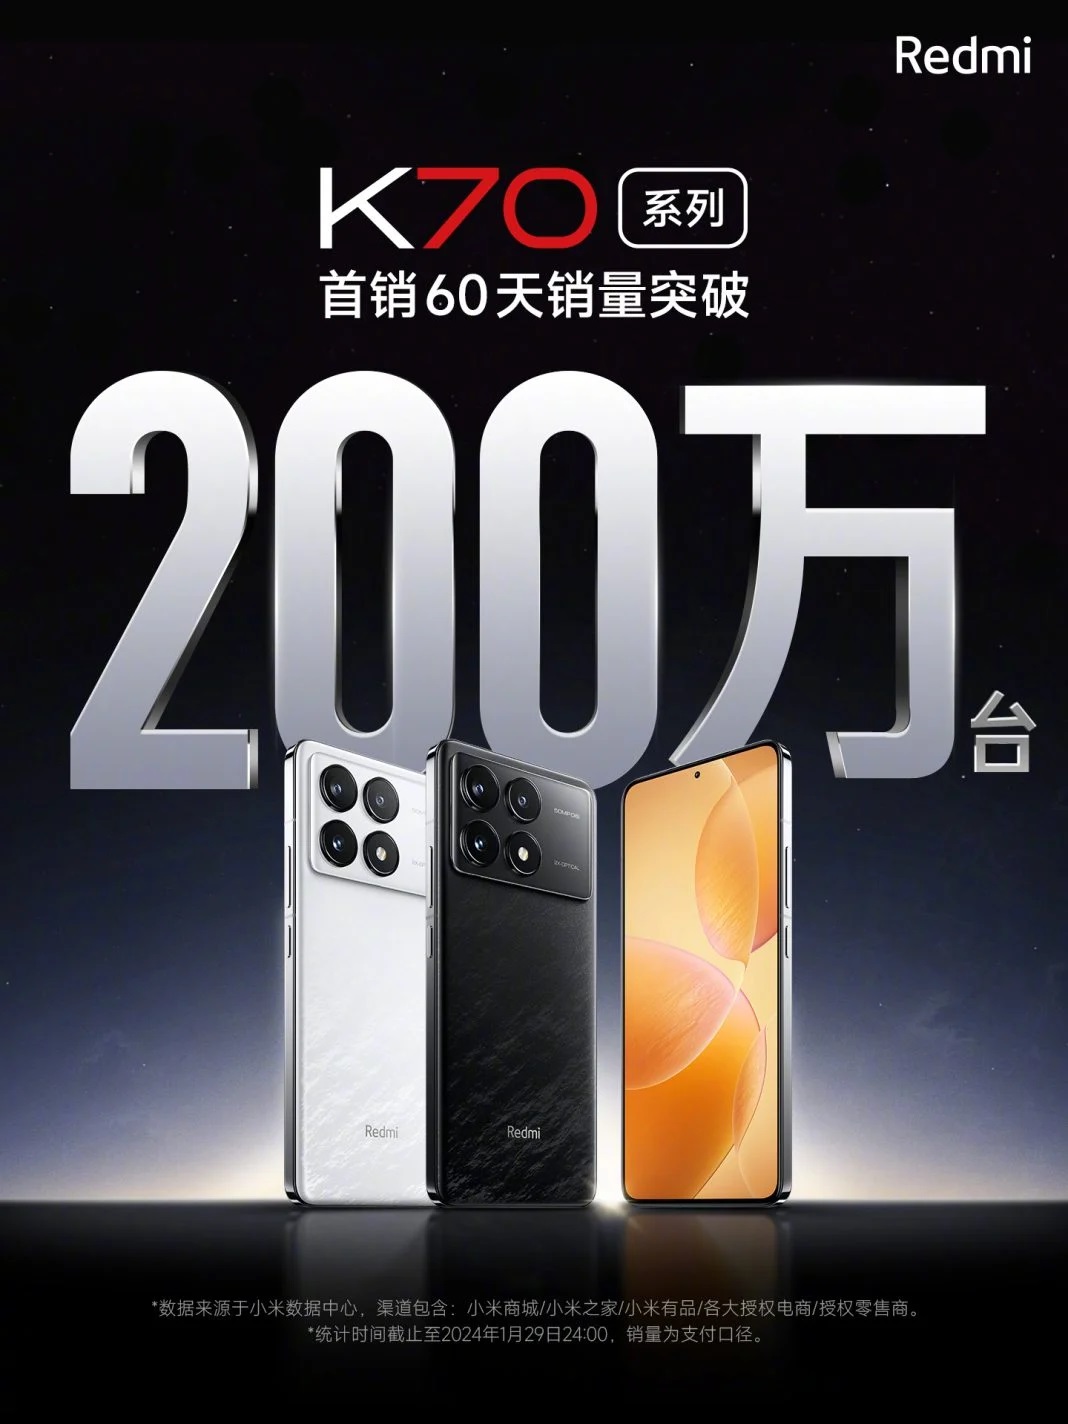 Смартфоны серии Redmi K70 на протяжении двух месяцев демонстрируют высокие продажи